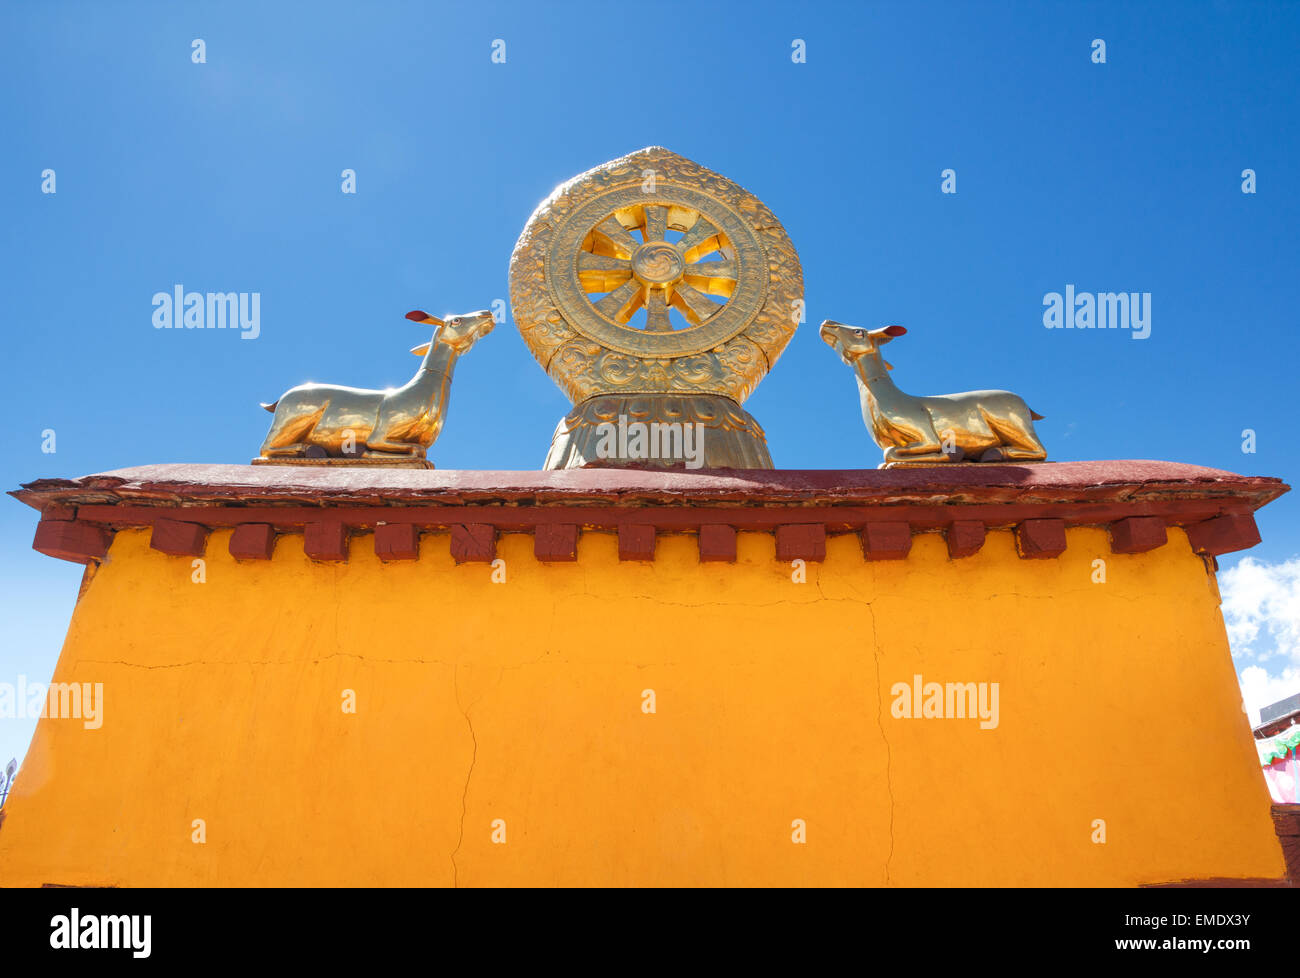 Auf dem Dach Statuen von zwei goldenen Hirschen flankieren ein Dharma-Rad auf den Jokhang Tempel in Lhasa, Tibetaanse Autonome Regio, China. Die Stockfoto